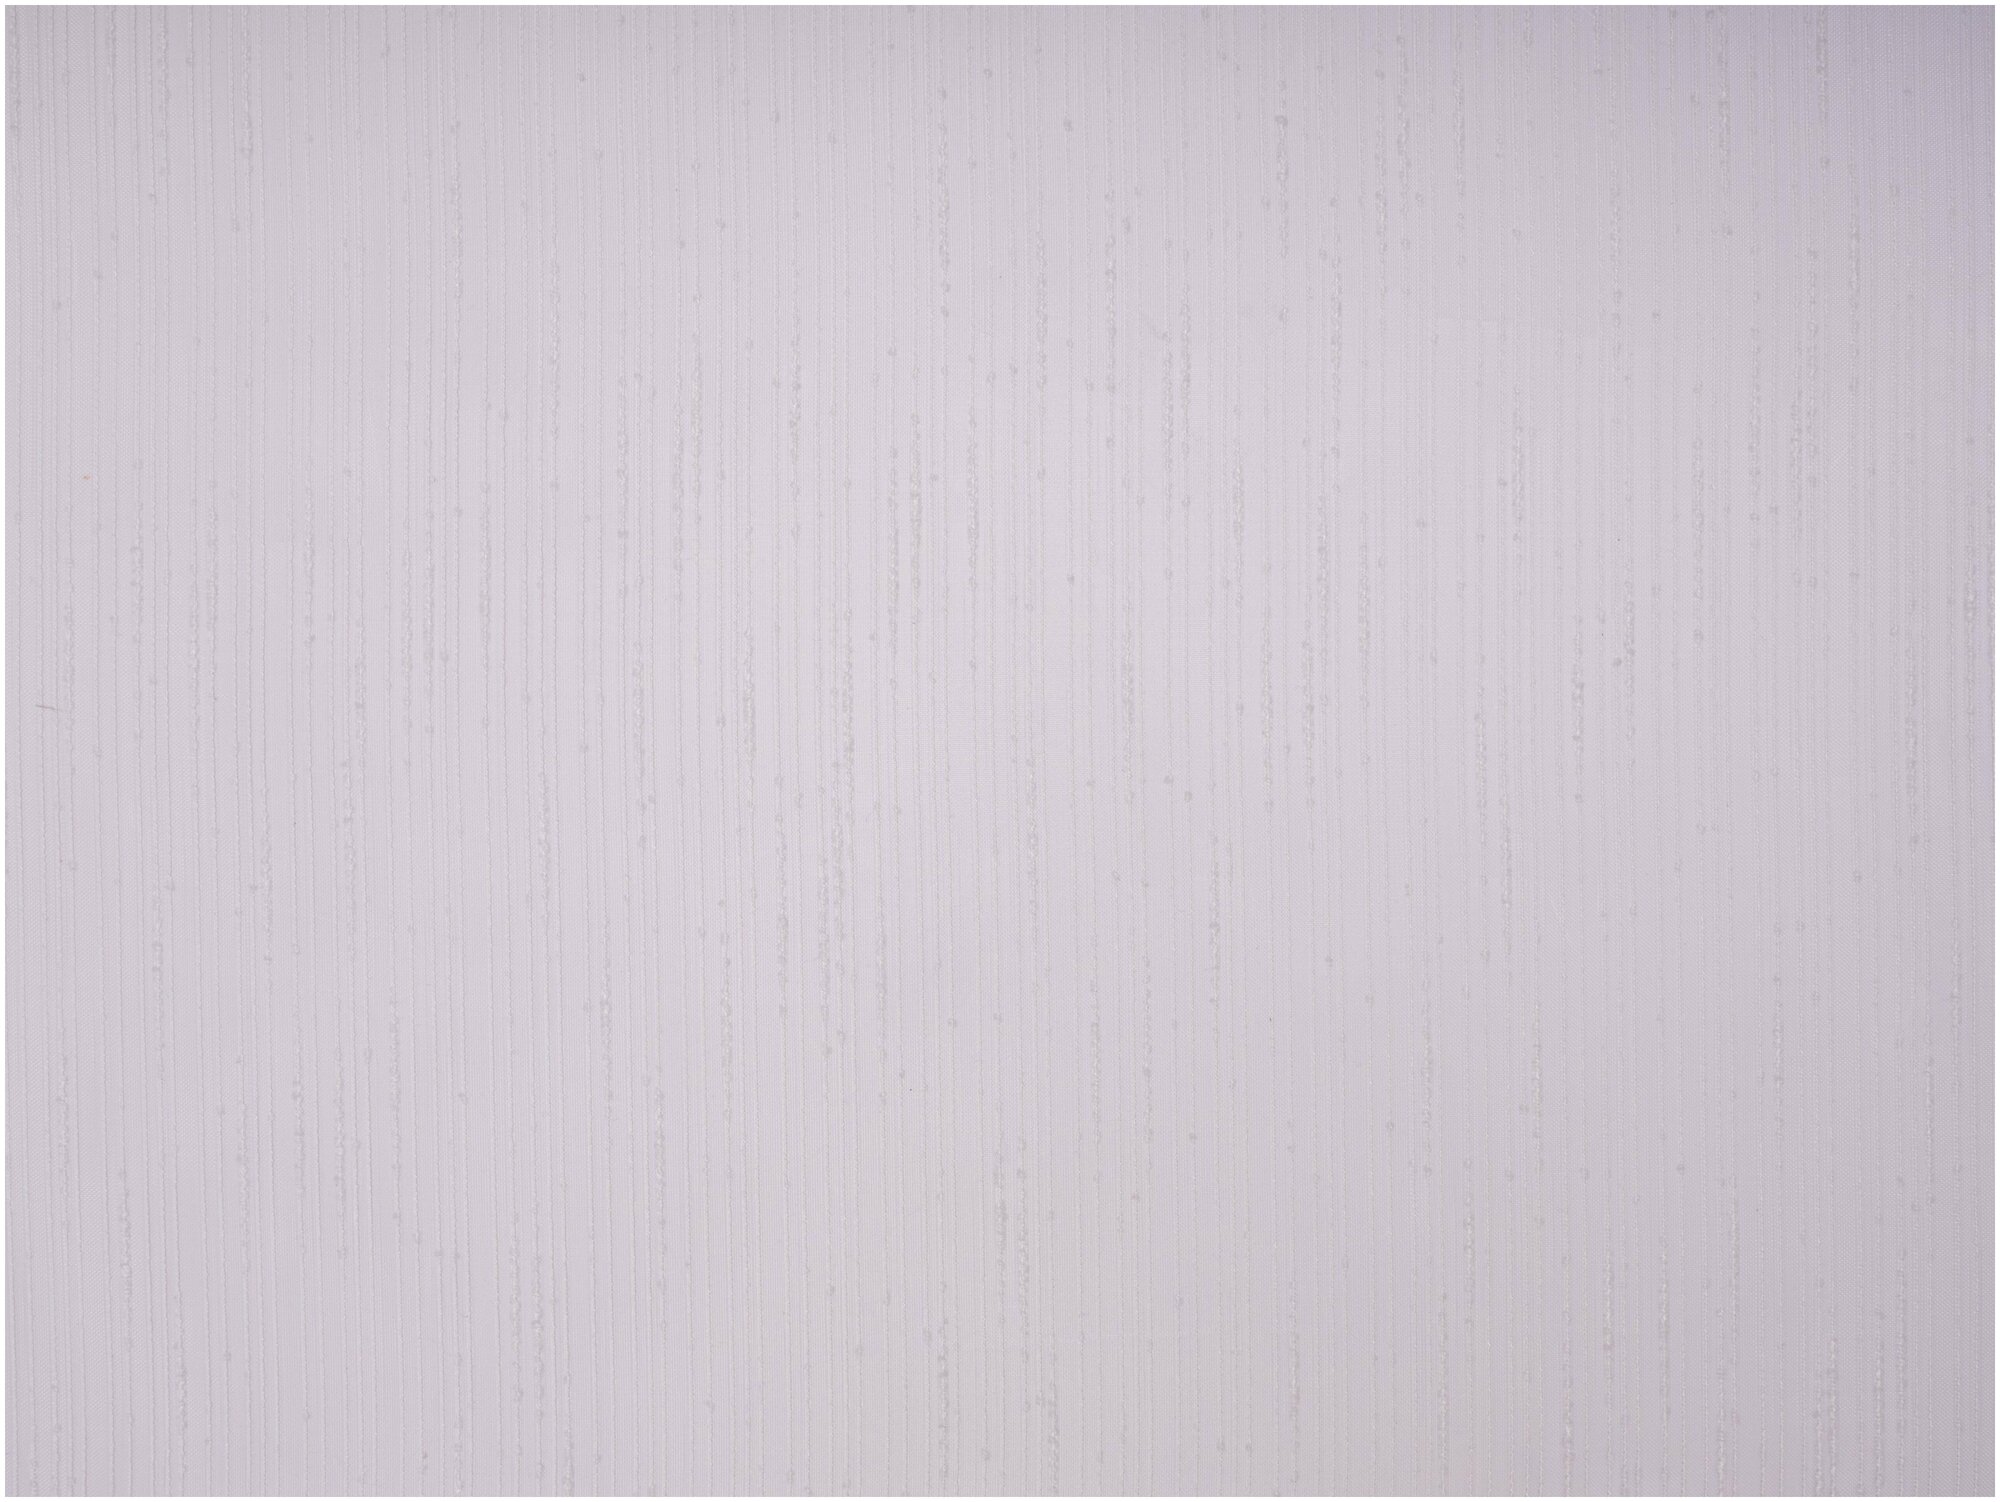 Тюль для кухни Дождик цвет сиреневый, высота 200 см, ширина 300 см, на шторной ленте